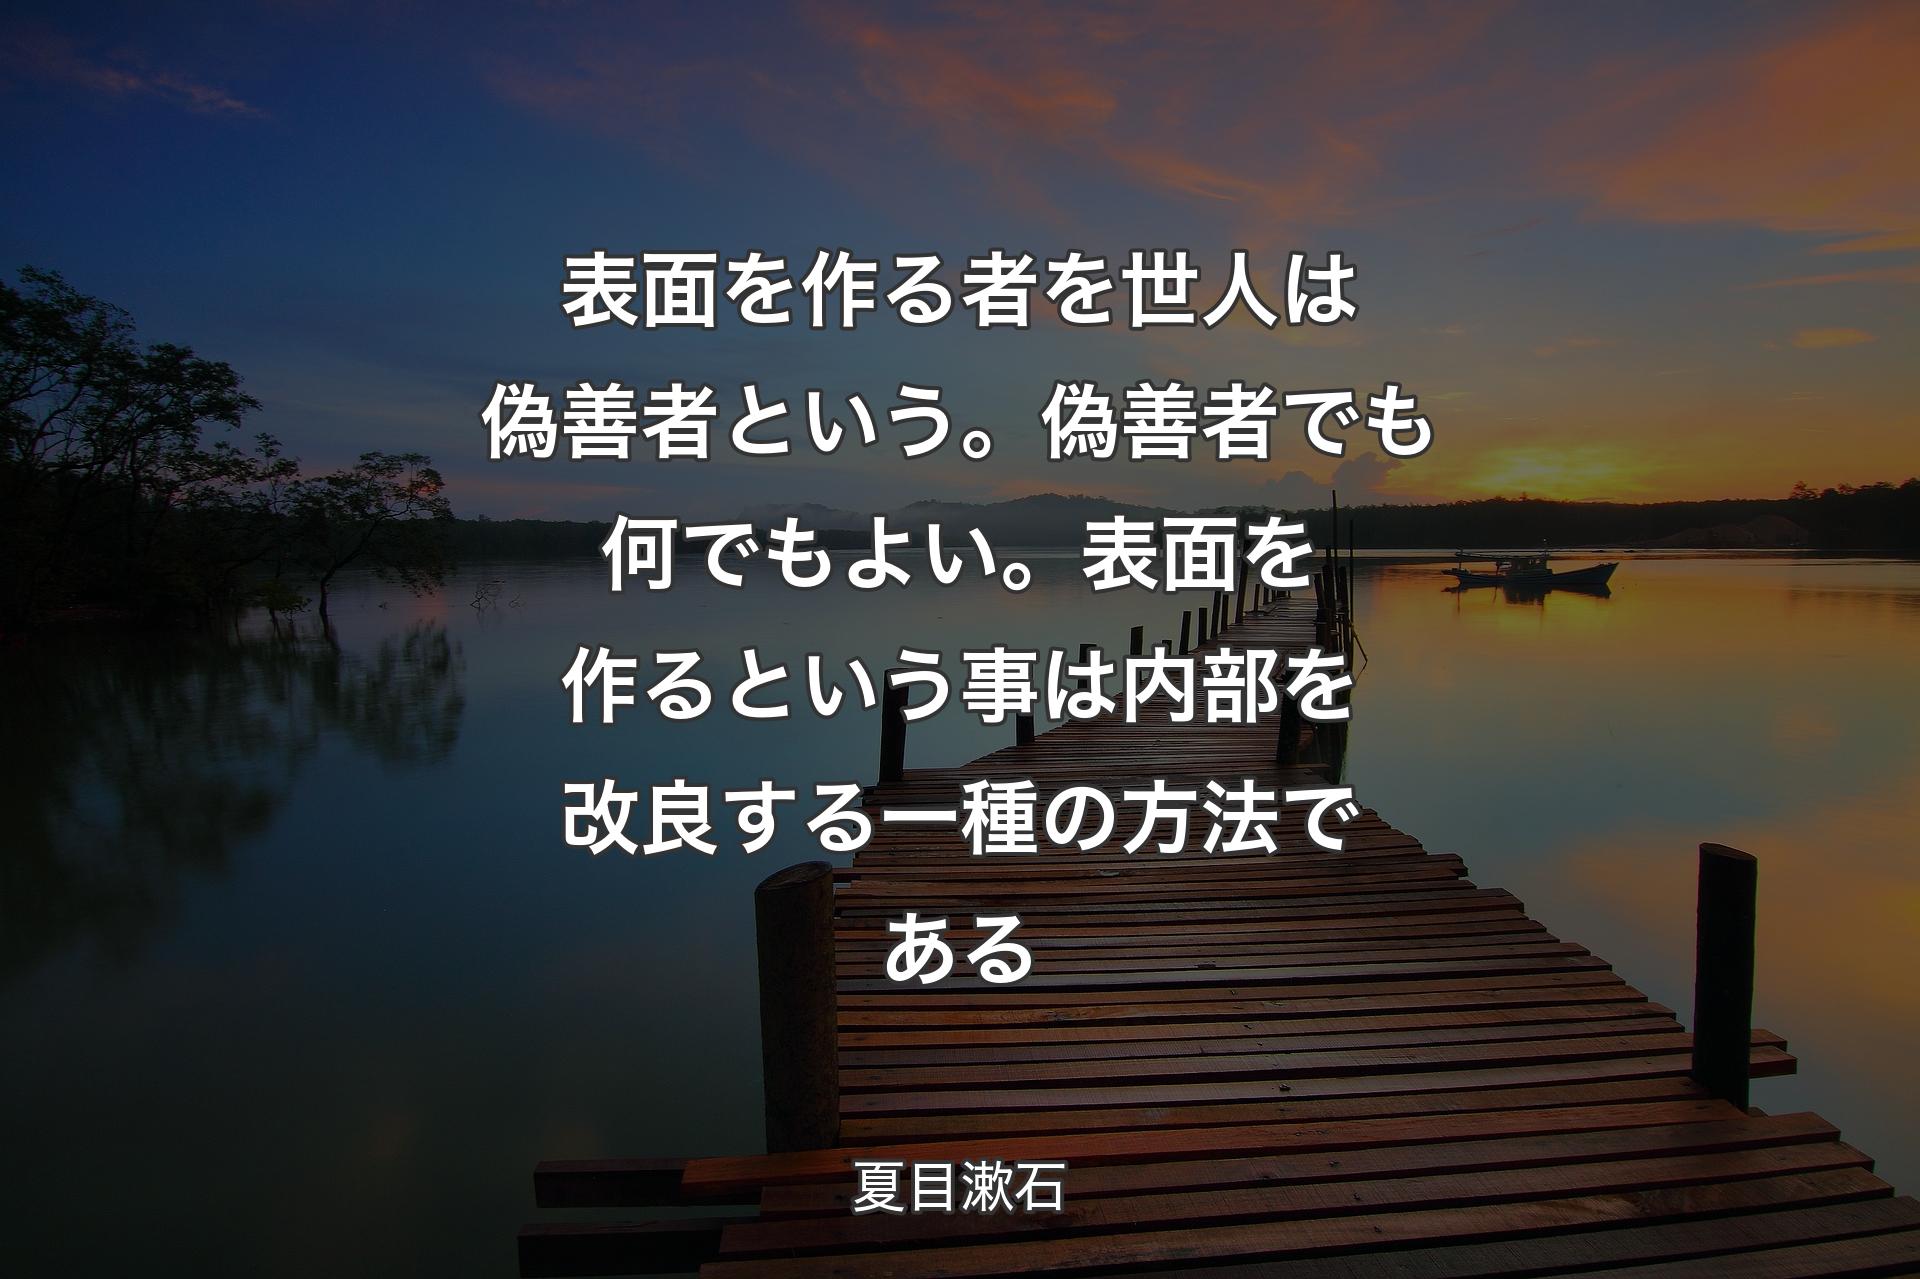 【背景3】表面を作る者を世人は偽善者という。偽善者でも何でもよい。表面を作るという事は内部を改良する一種の方法である - 夏目漱石